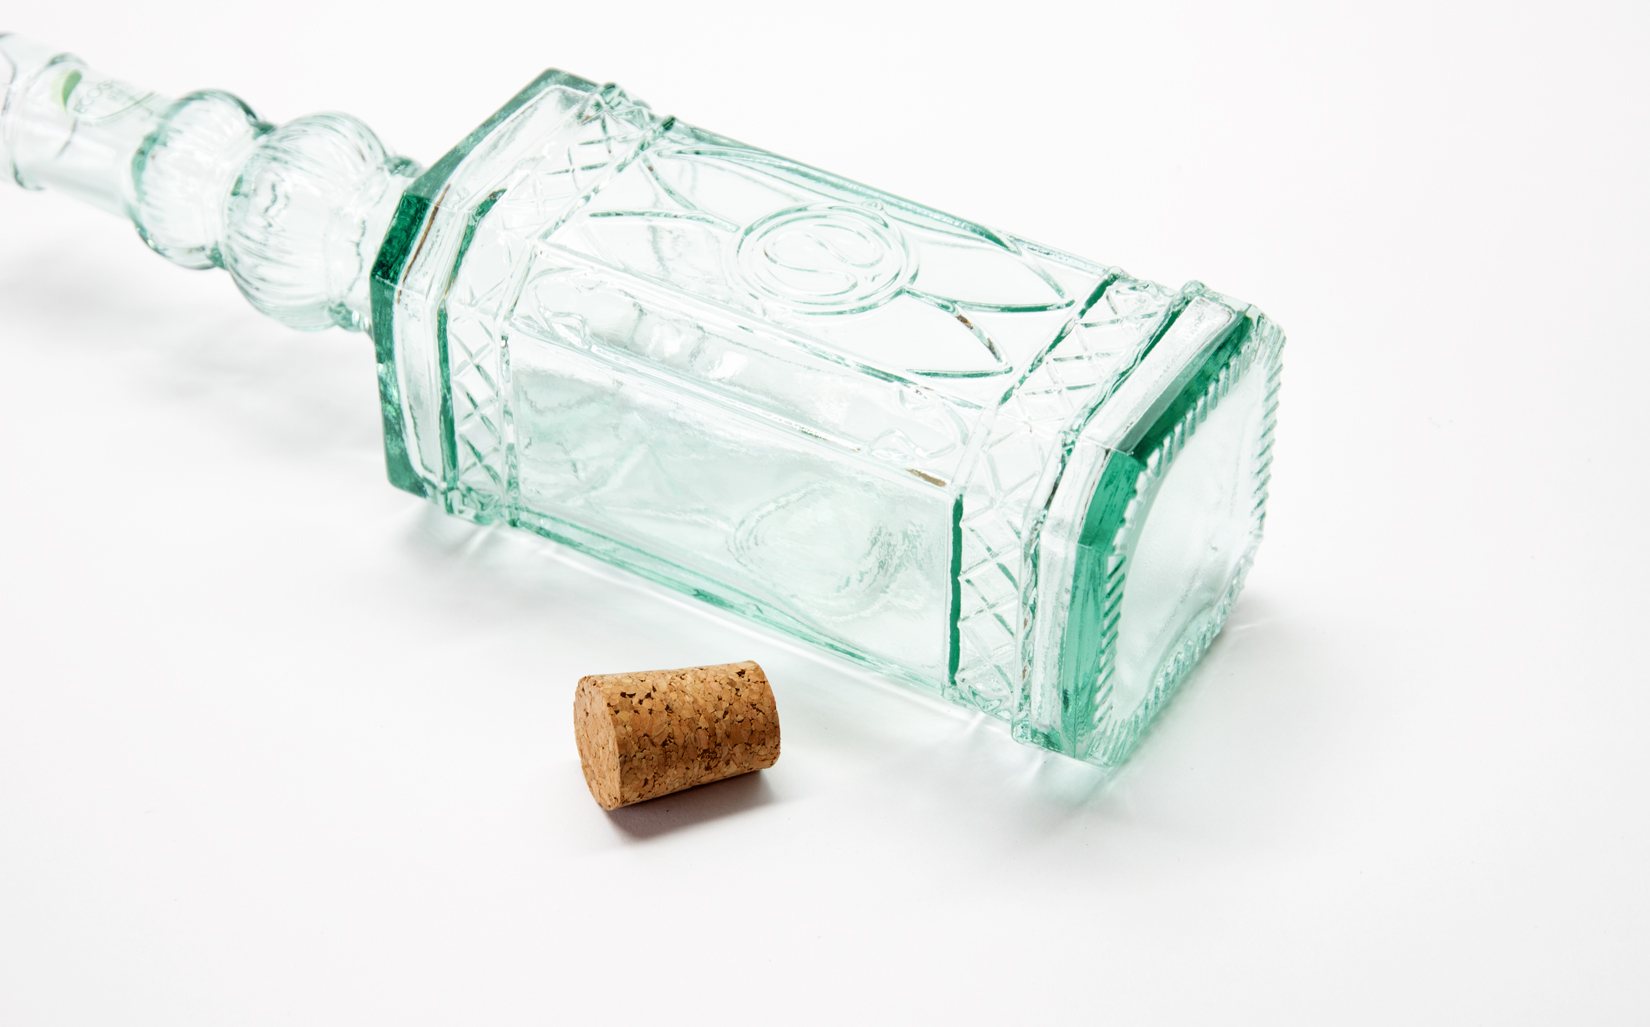 Ecogreen Flasche 500ml mit Kork Verschluss Decor